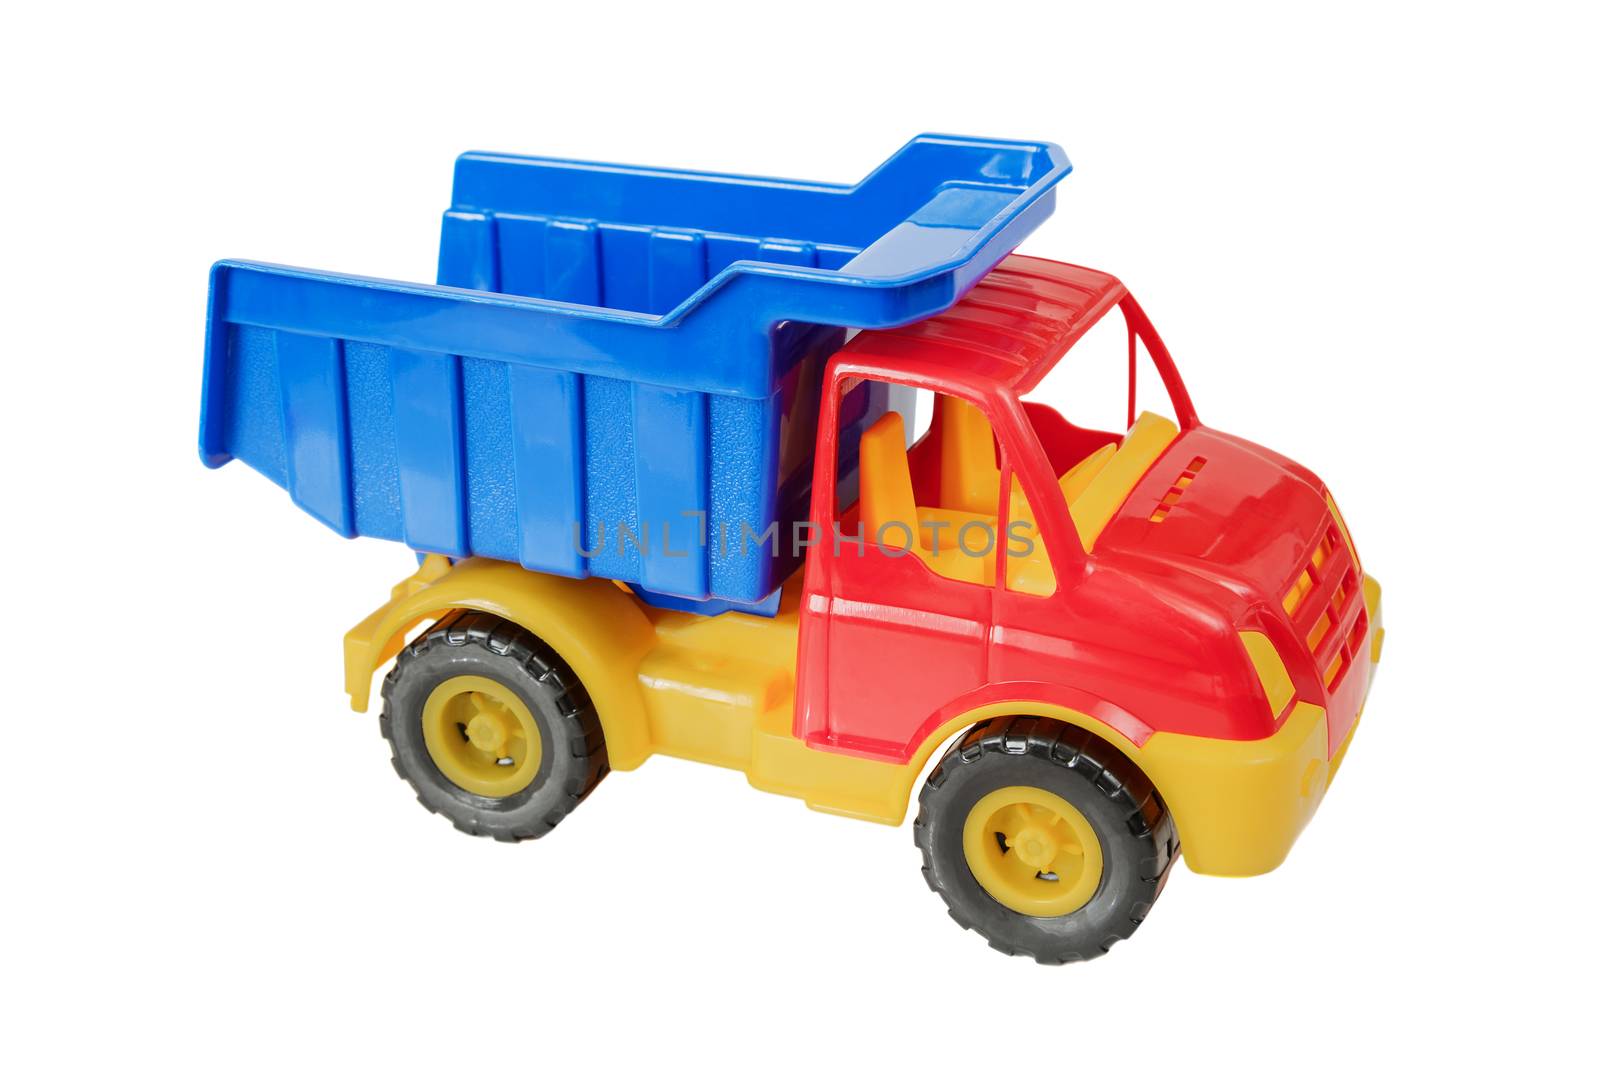 Toy truck on white background by Epitavi